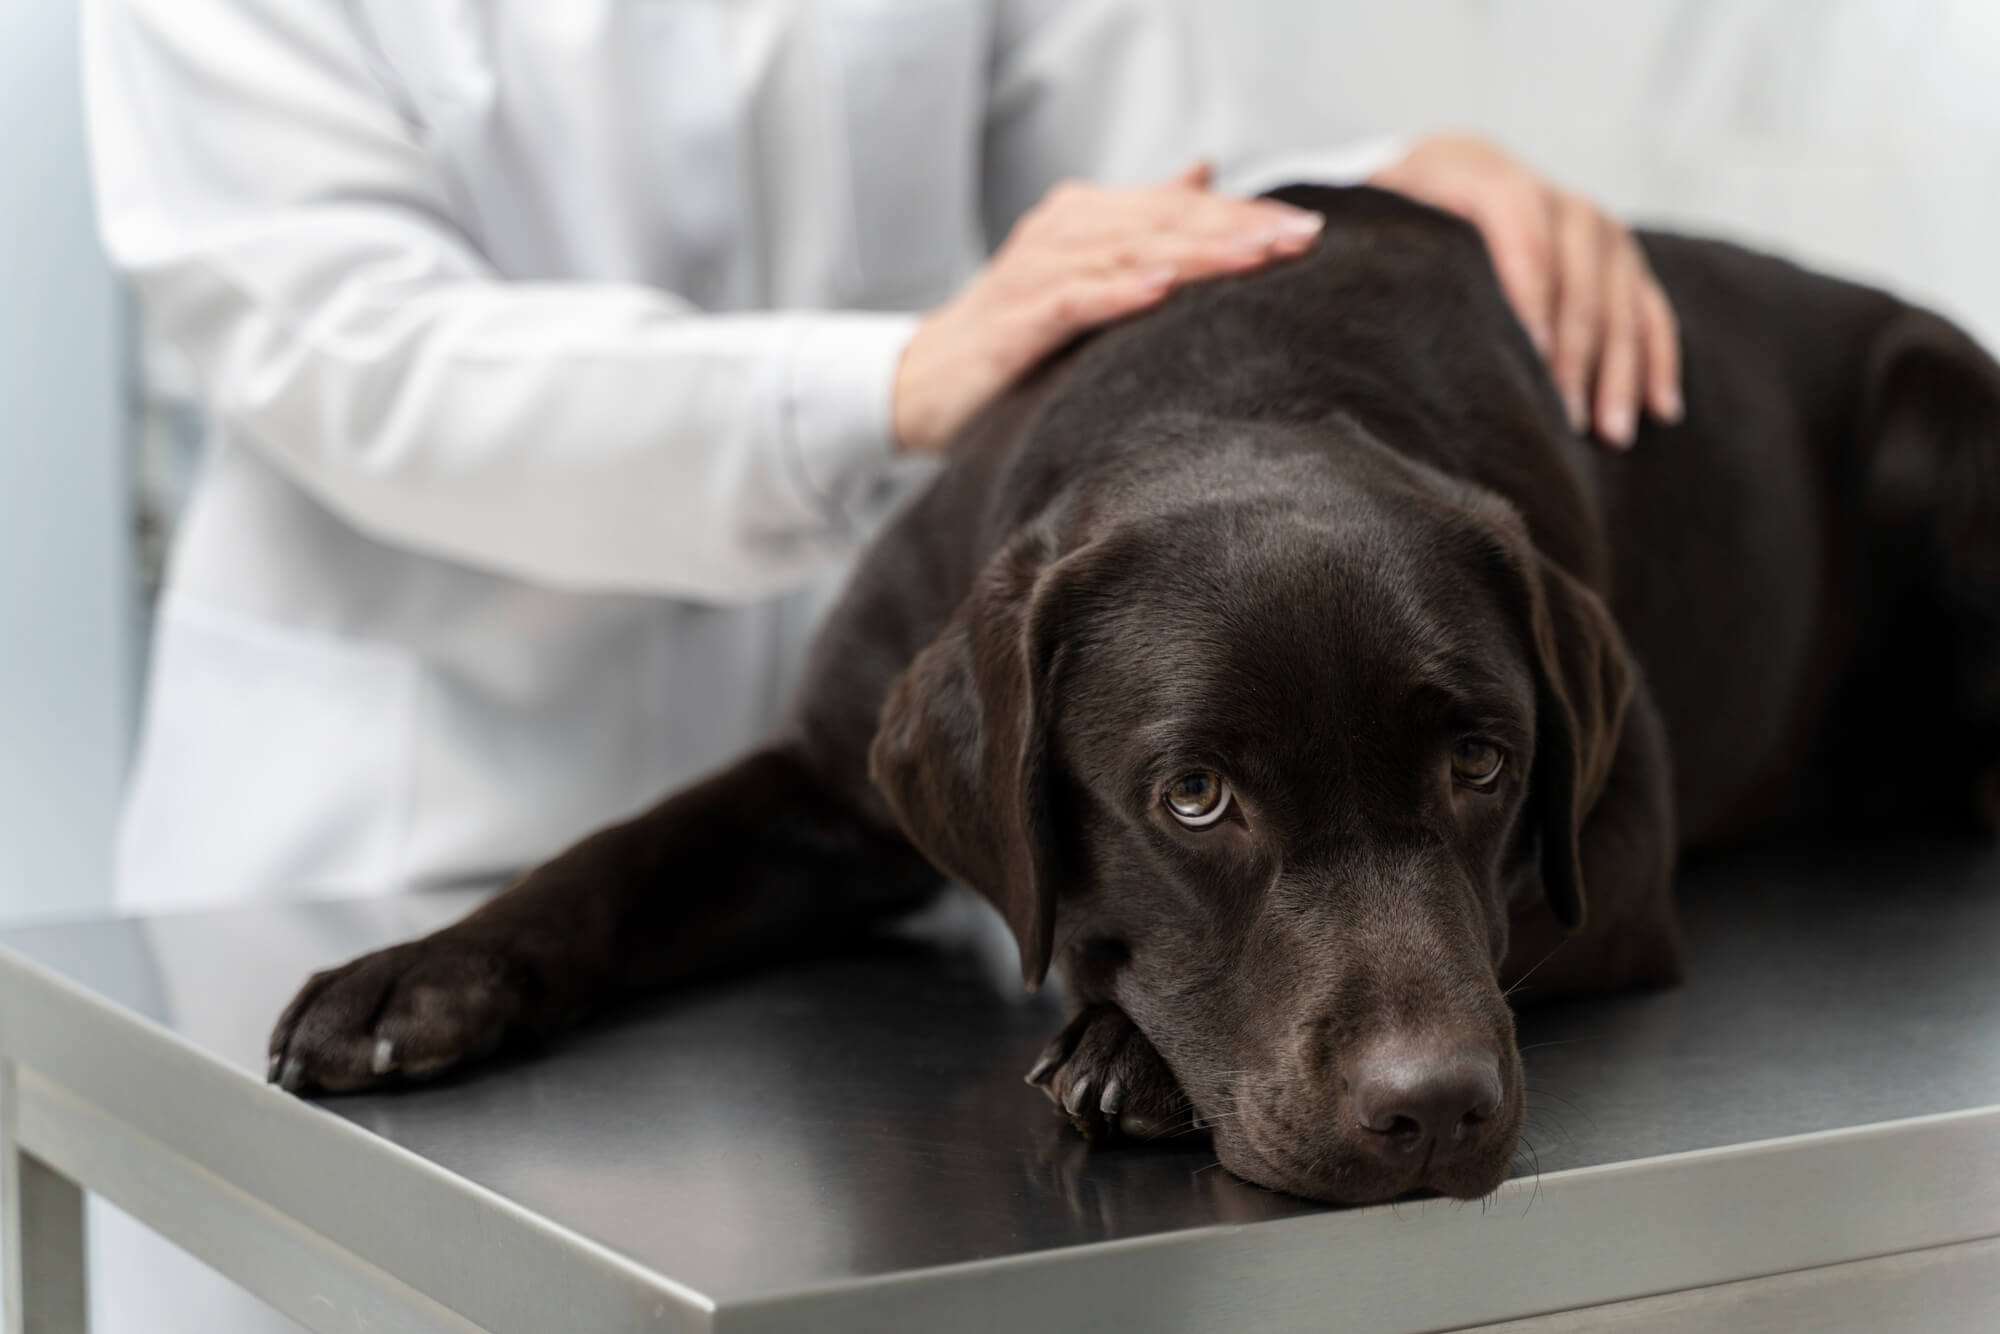 Insuficiência renal em cachorros: sinais, causas e tratamento